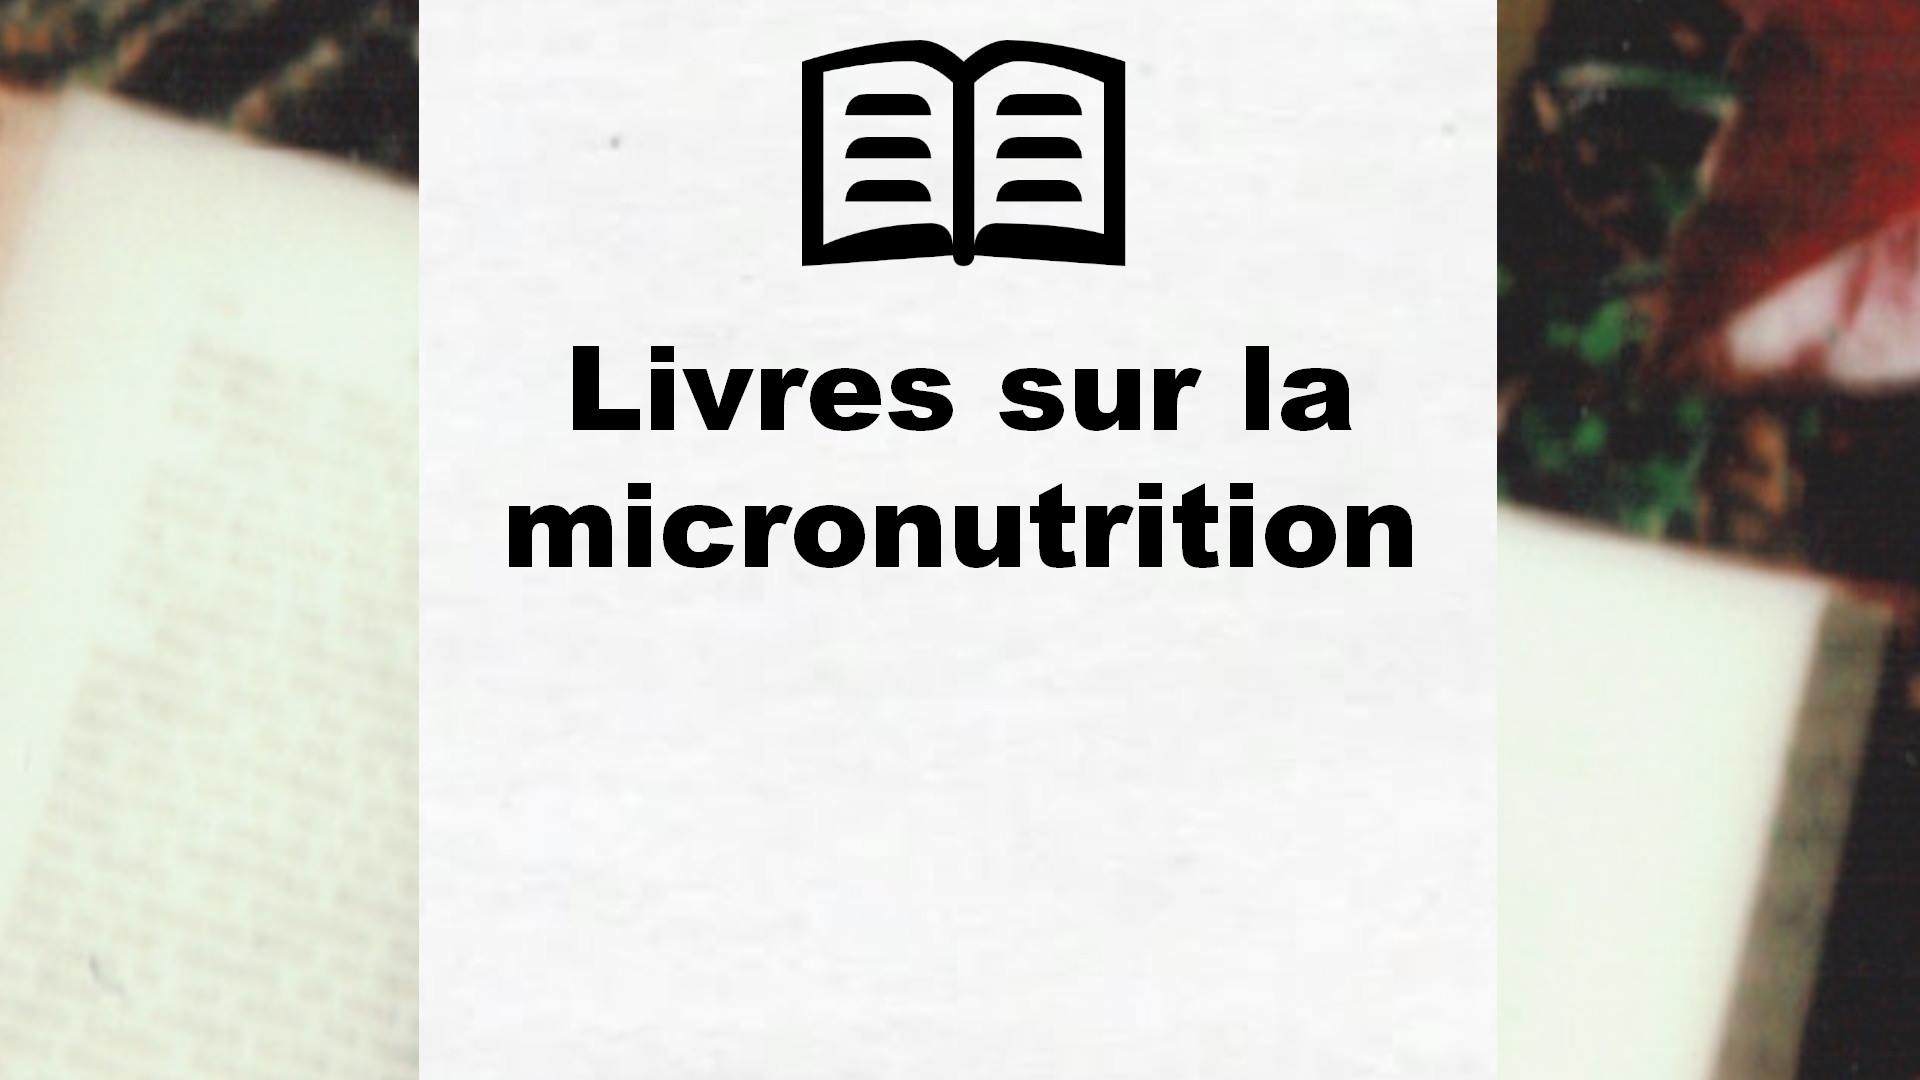 Livres sur la micronutrition